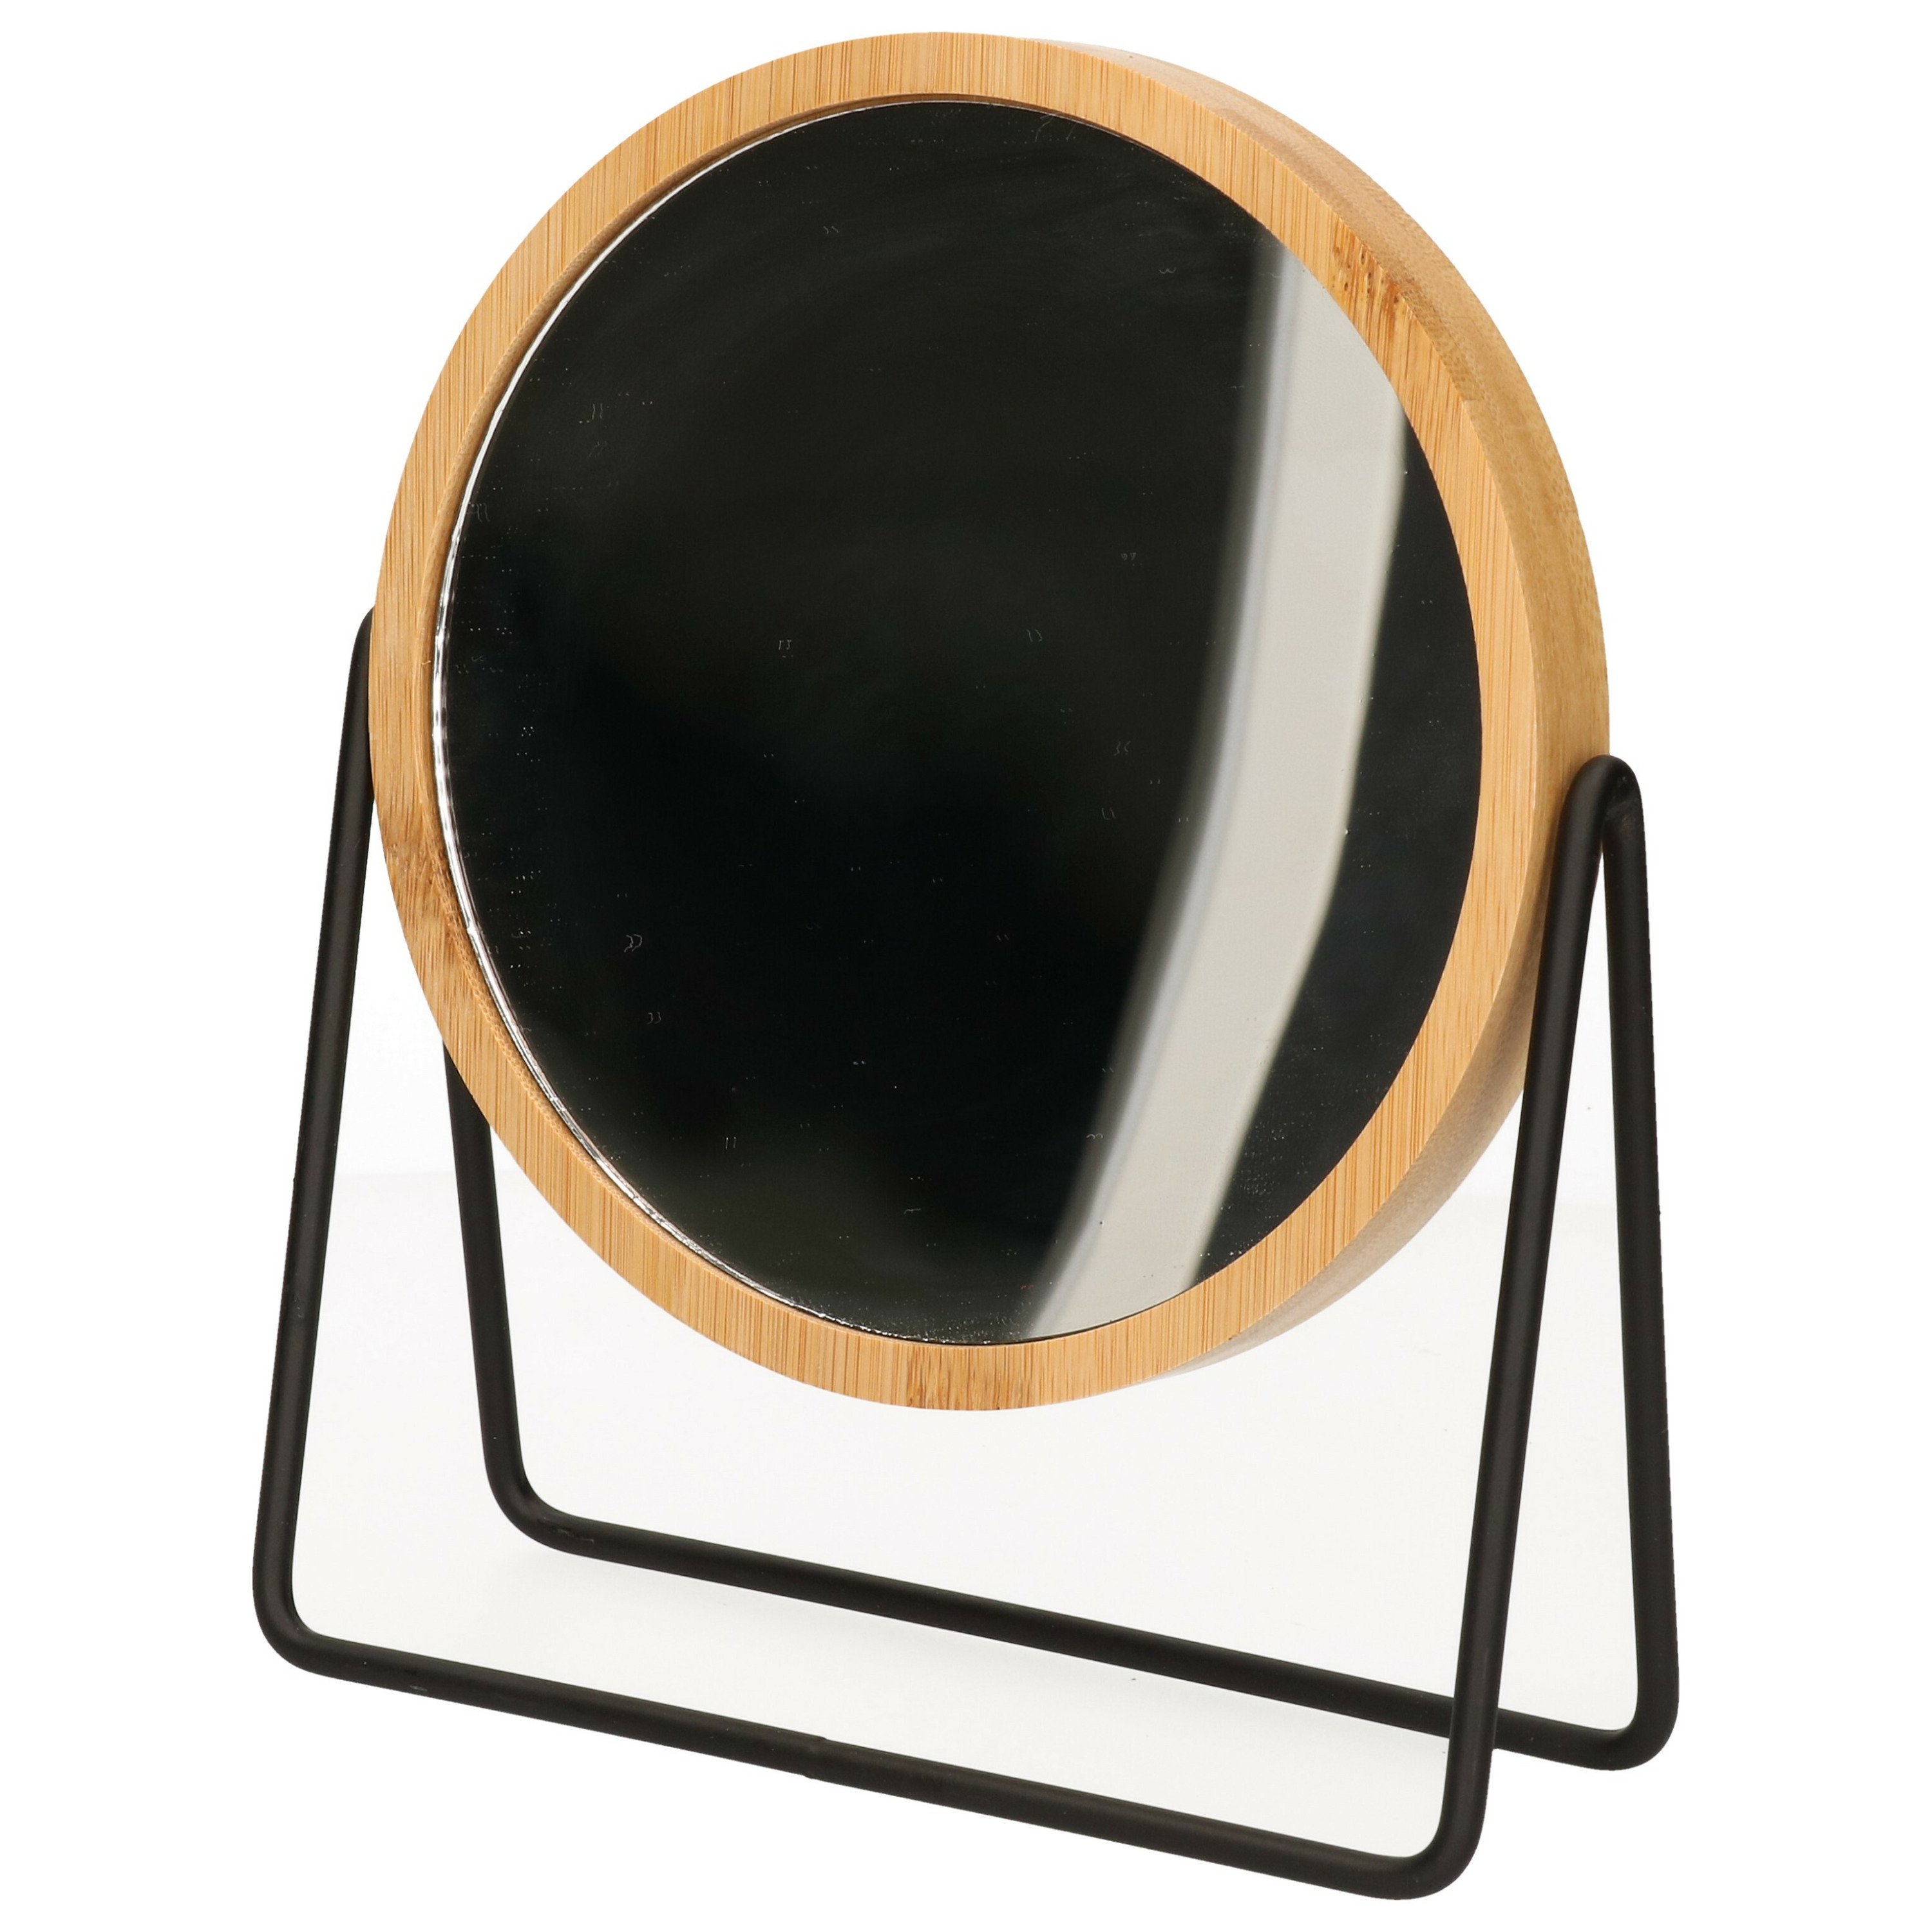 Make-up spiegel 3x zoom bamboe-hout 17 x 20 cm lichtbruin-zwart dubbelzijdig